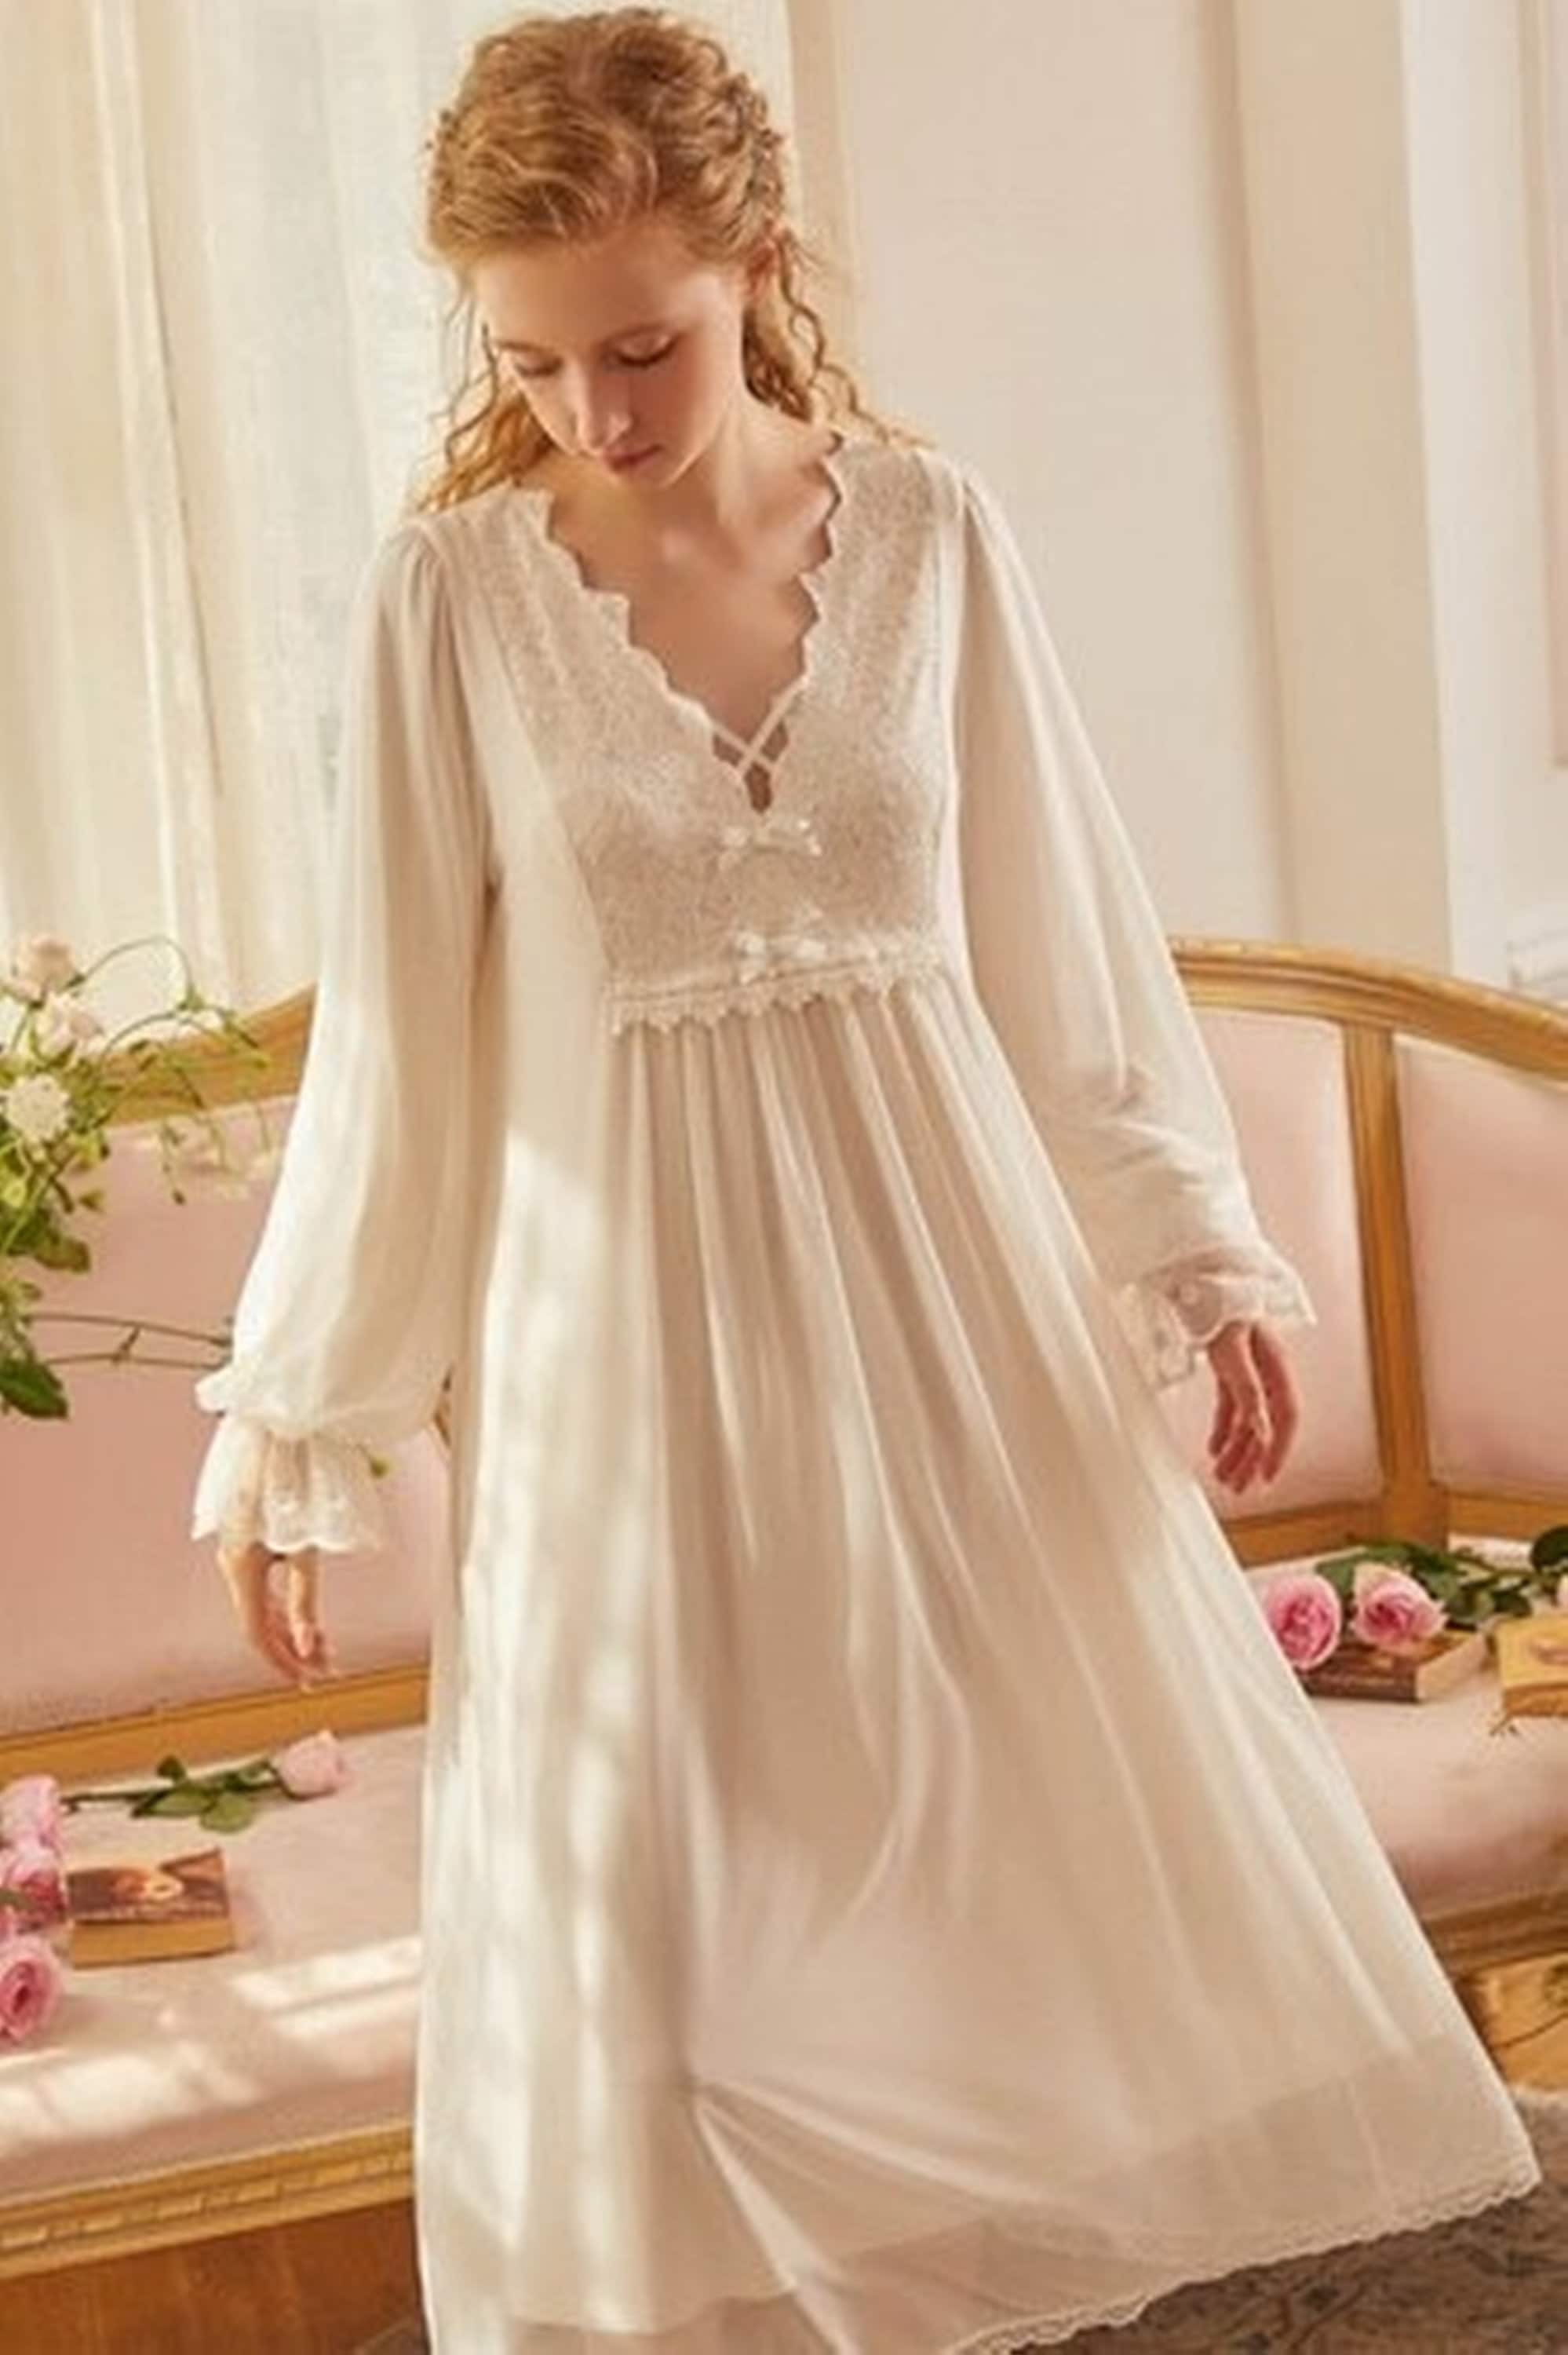 Victorian Edwardian White Cotton Nightgown Renaissance | Etsy